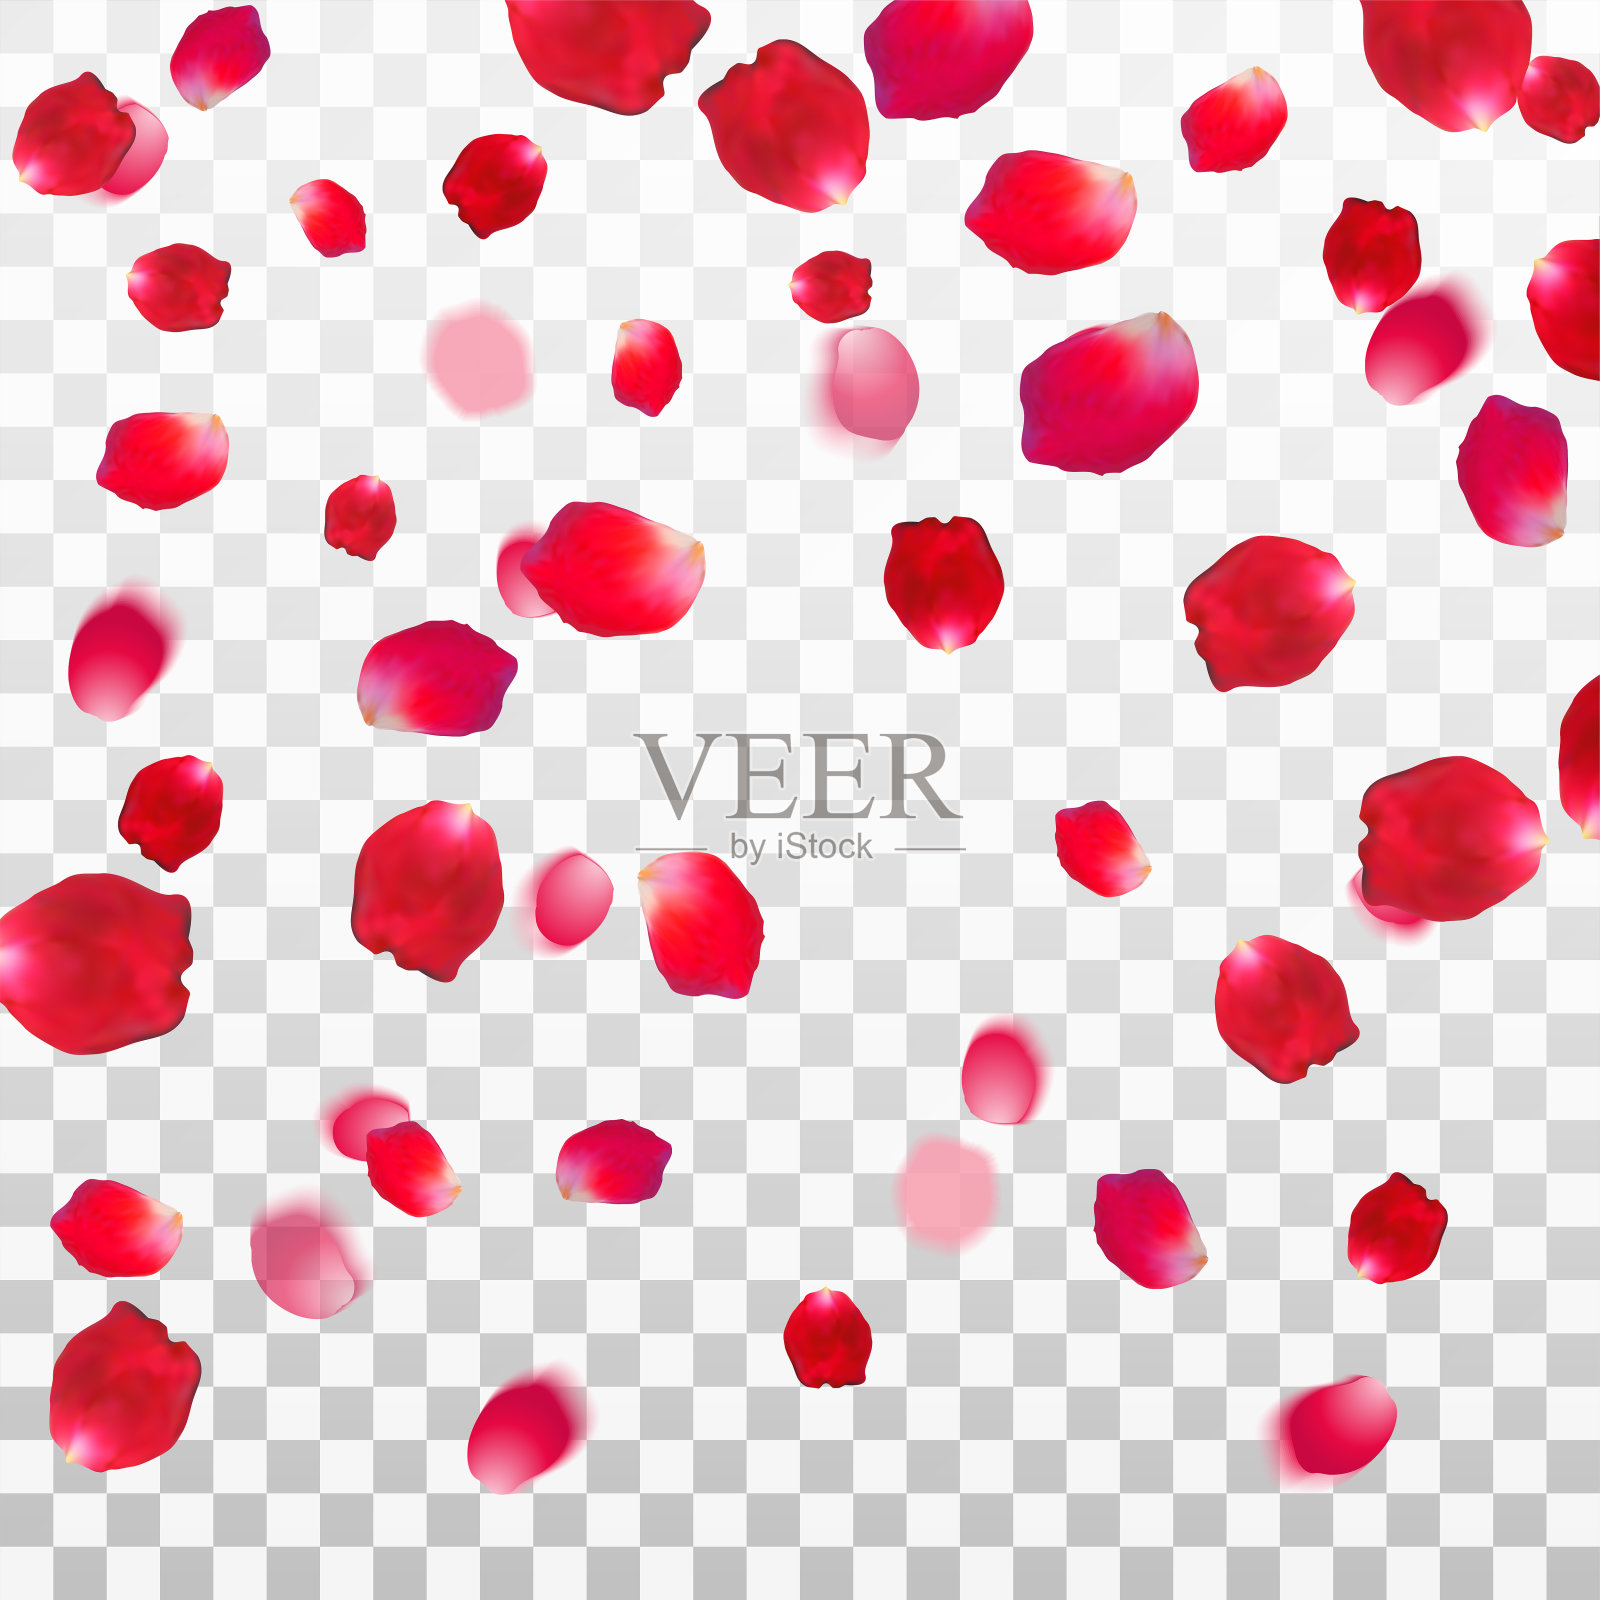 抽象背景与飞行的红色玫瑰花瓣在白色透明的背景。矢量插图。每股收益10。设计元素图片